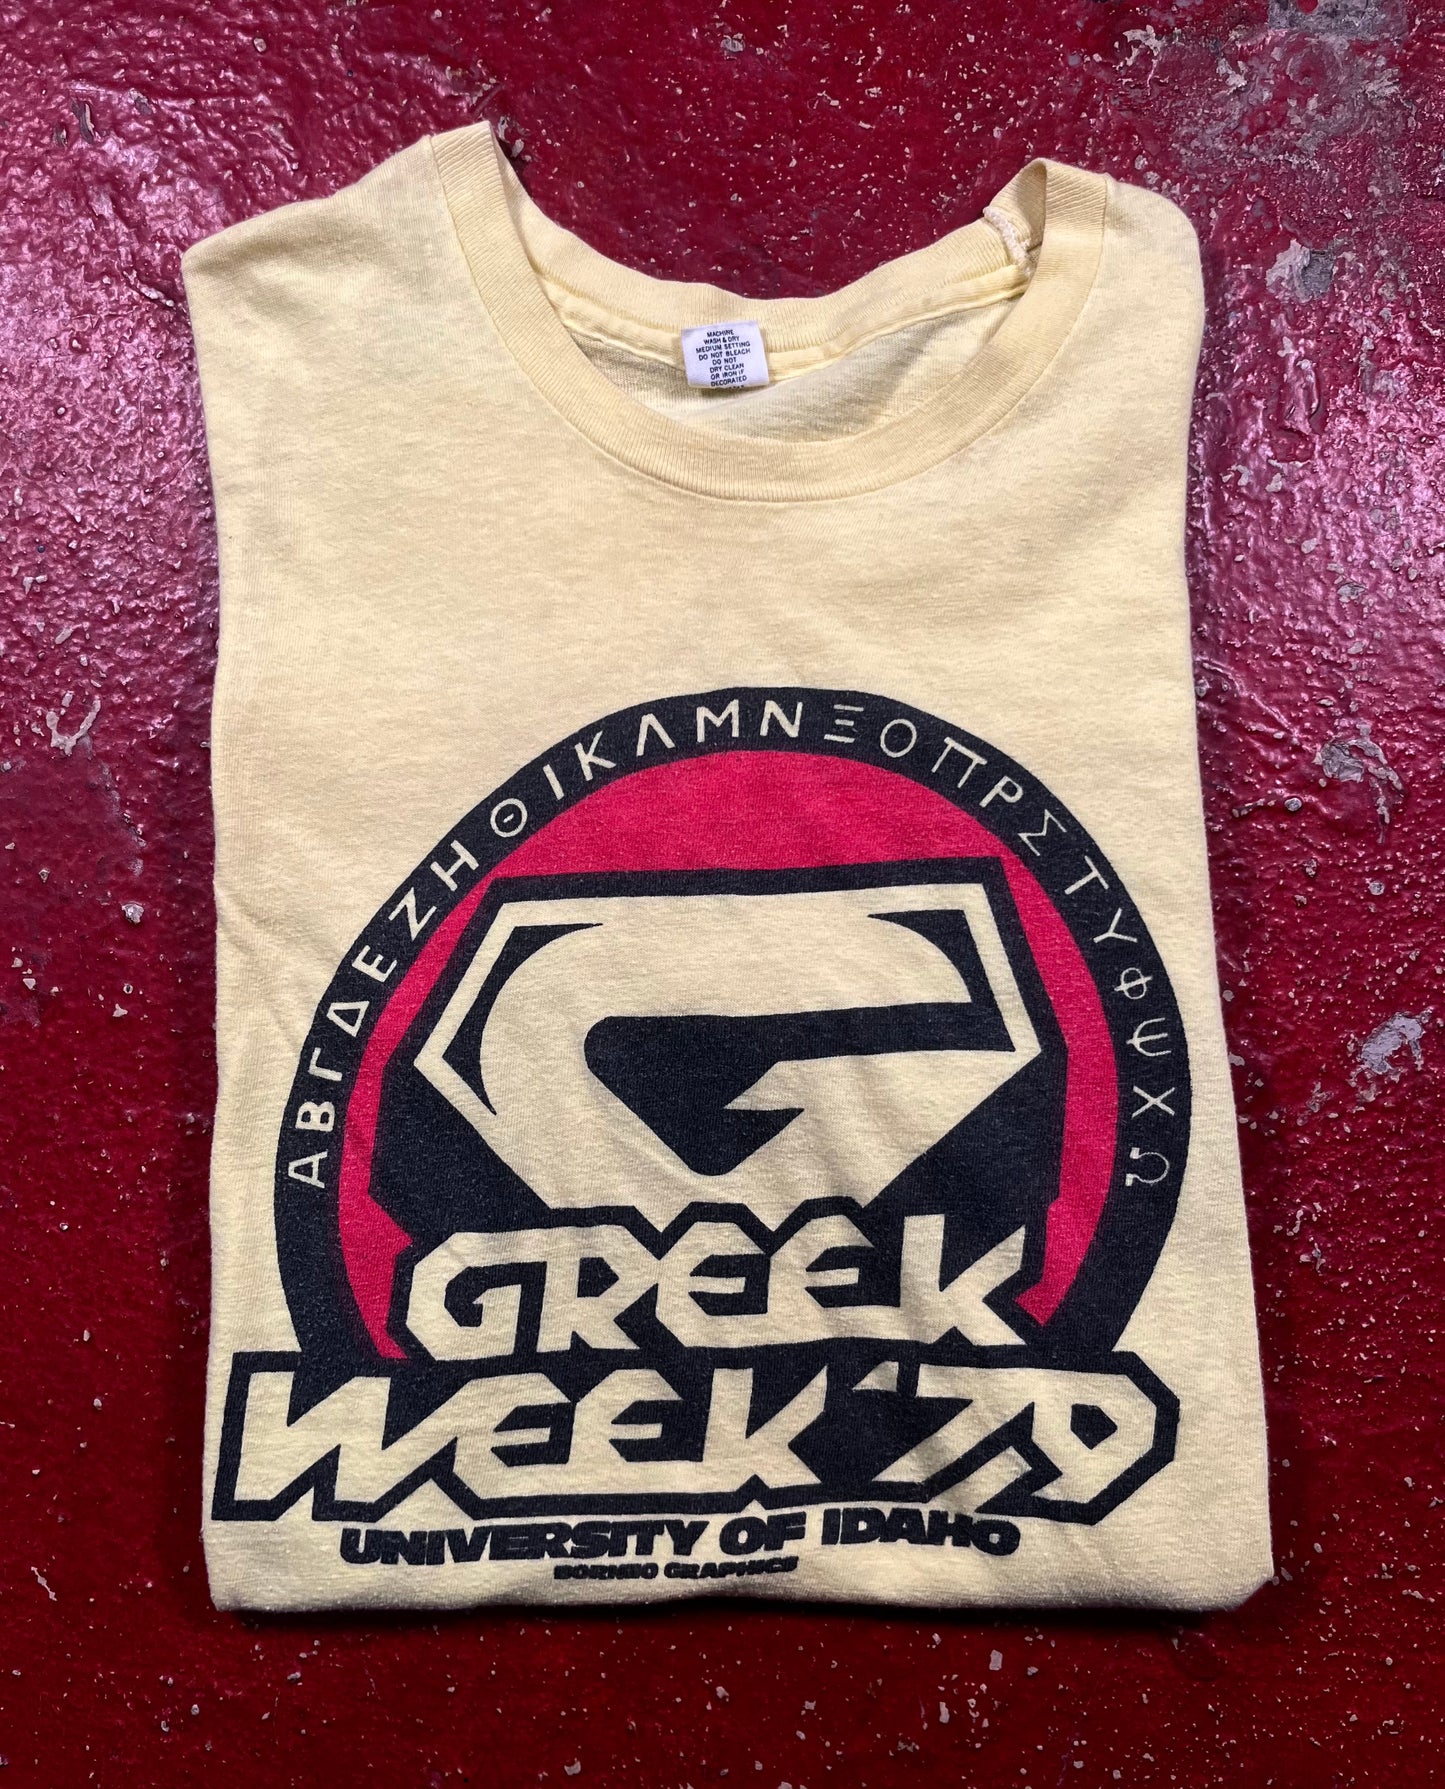 1979 University Of Idaho Greek Week Tee